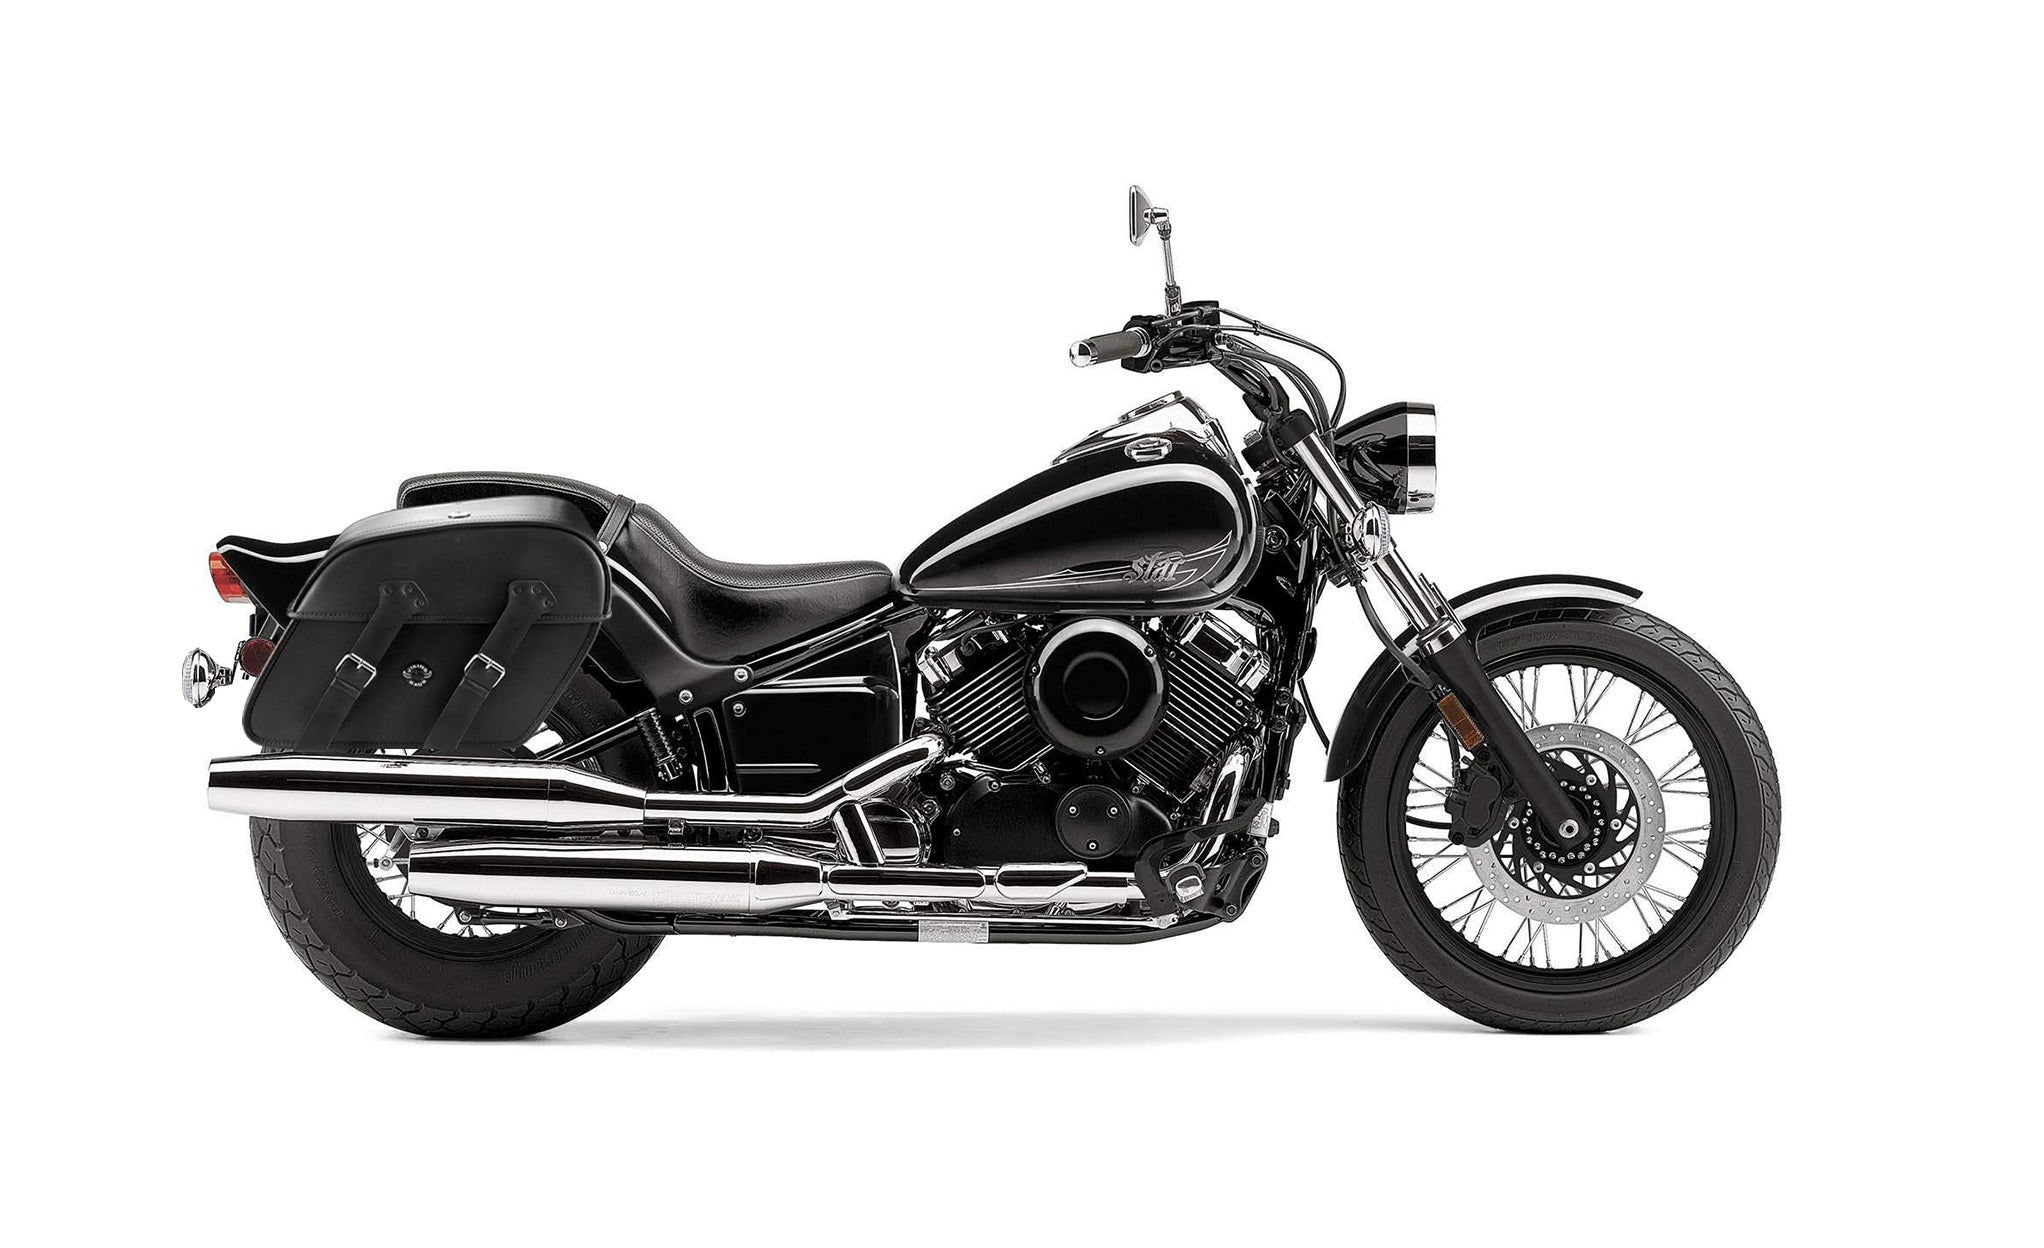 Viking Raven Large Yamaha V Star 650 Custom Xvs65T Motorcycle Leather Saddlebags on Bike Photo @expand